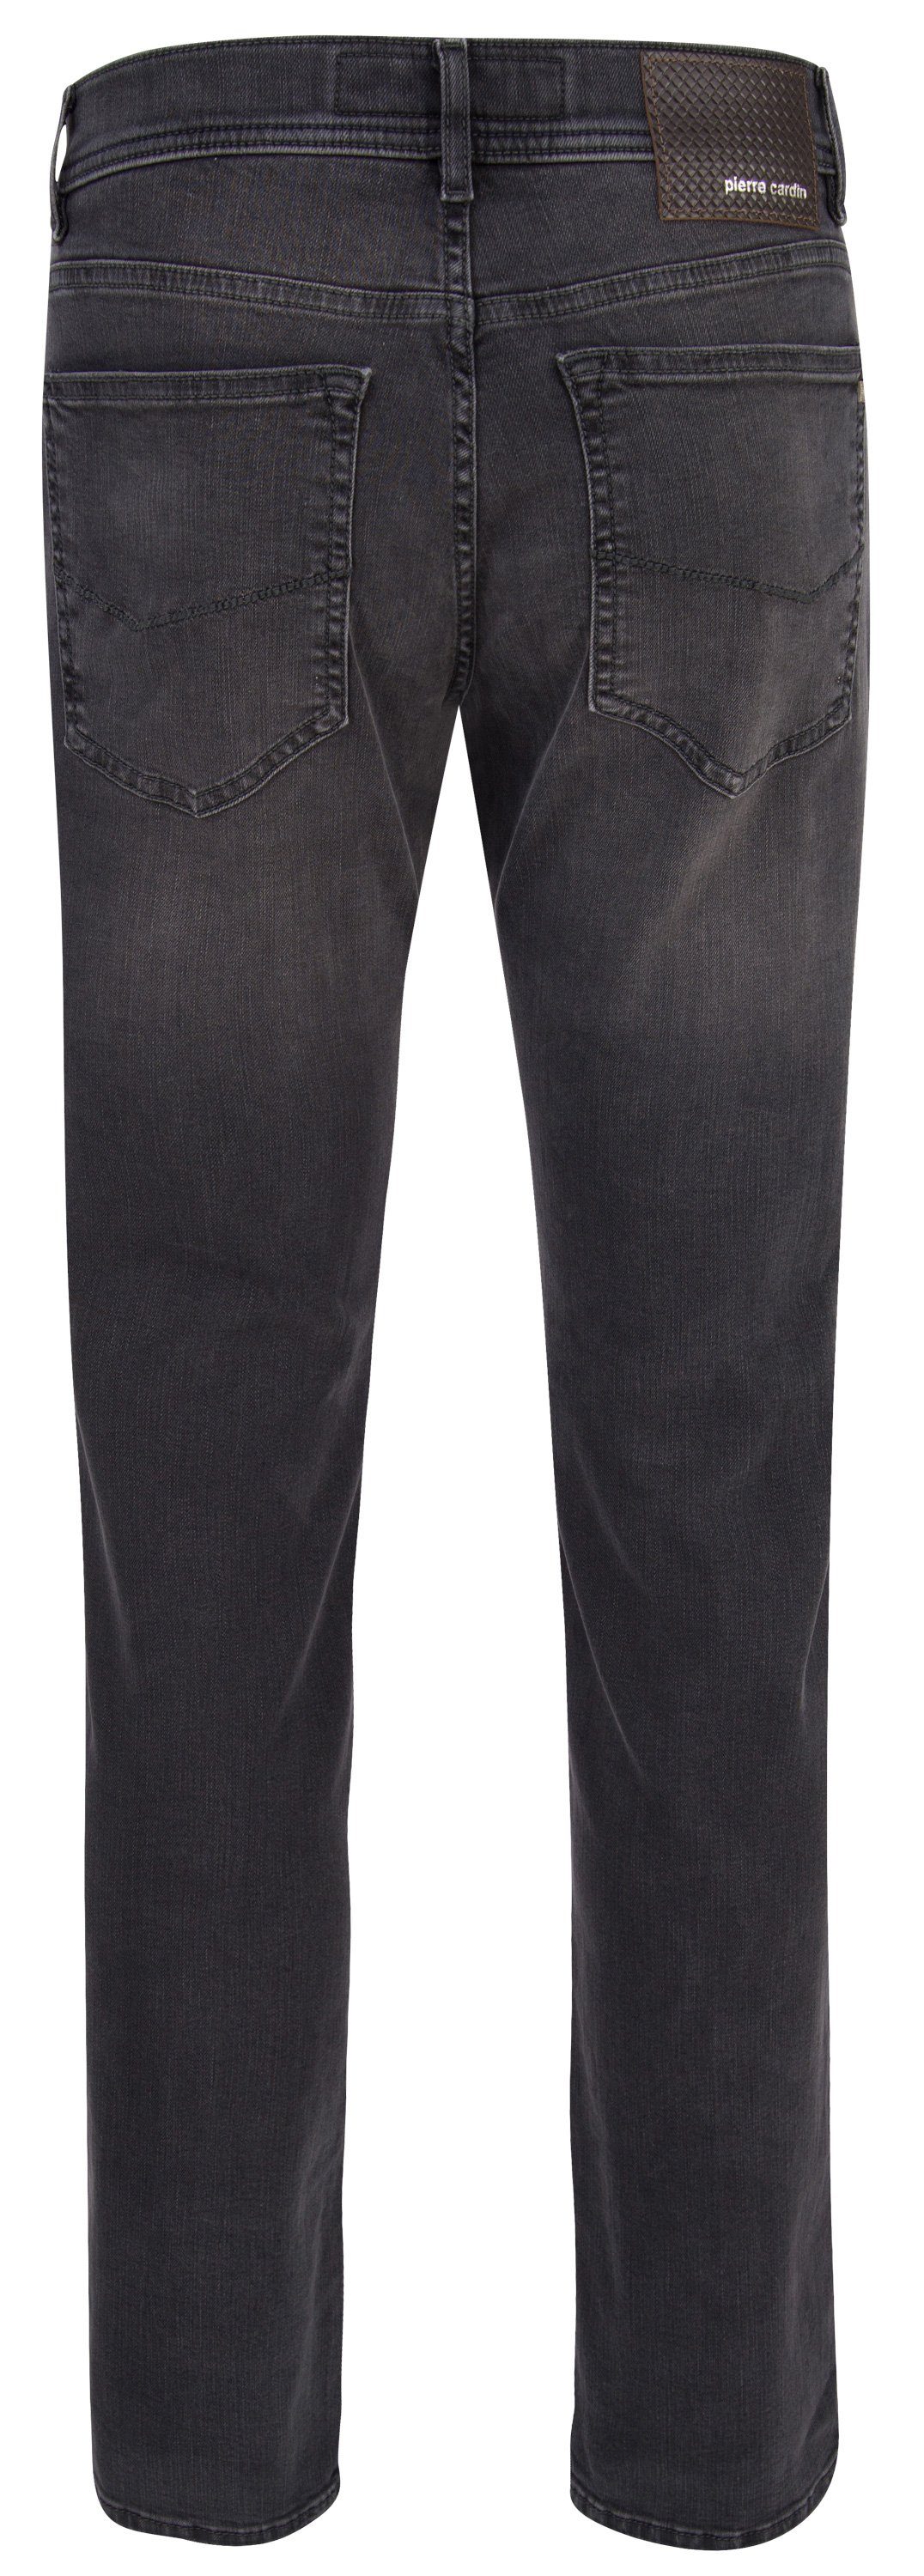 30915 - 5-Pocket-Jeans Cardin PIERRE VOYAGE Pierre LYON dark CARDIN grey 7711.01 used